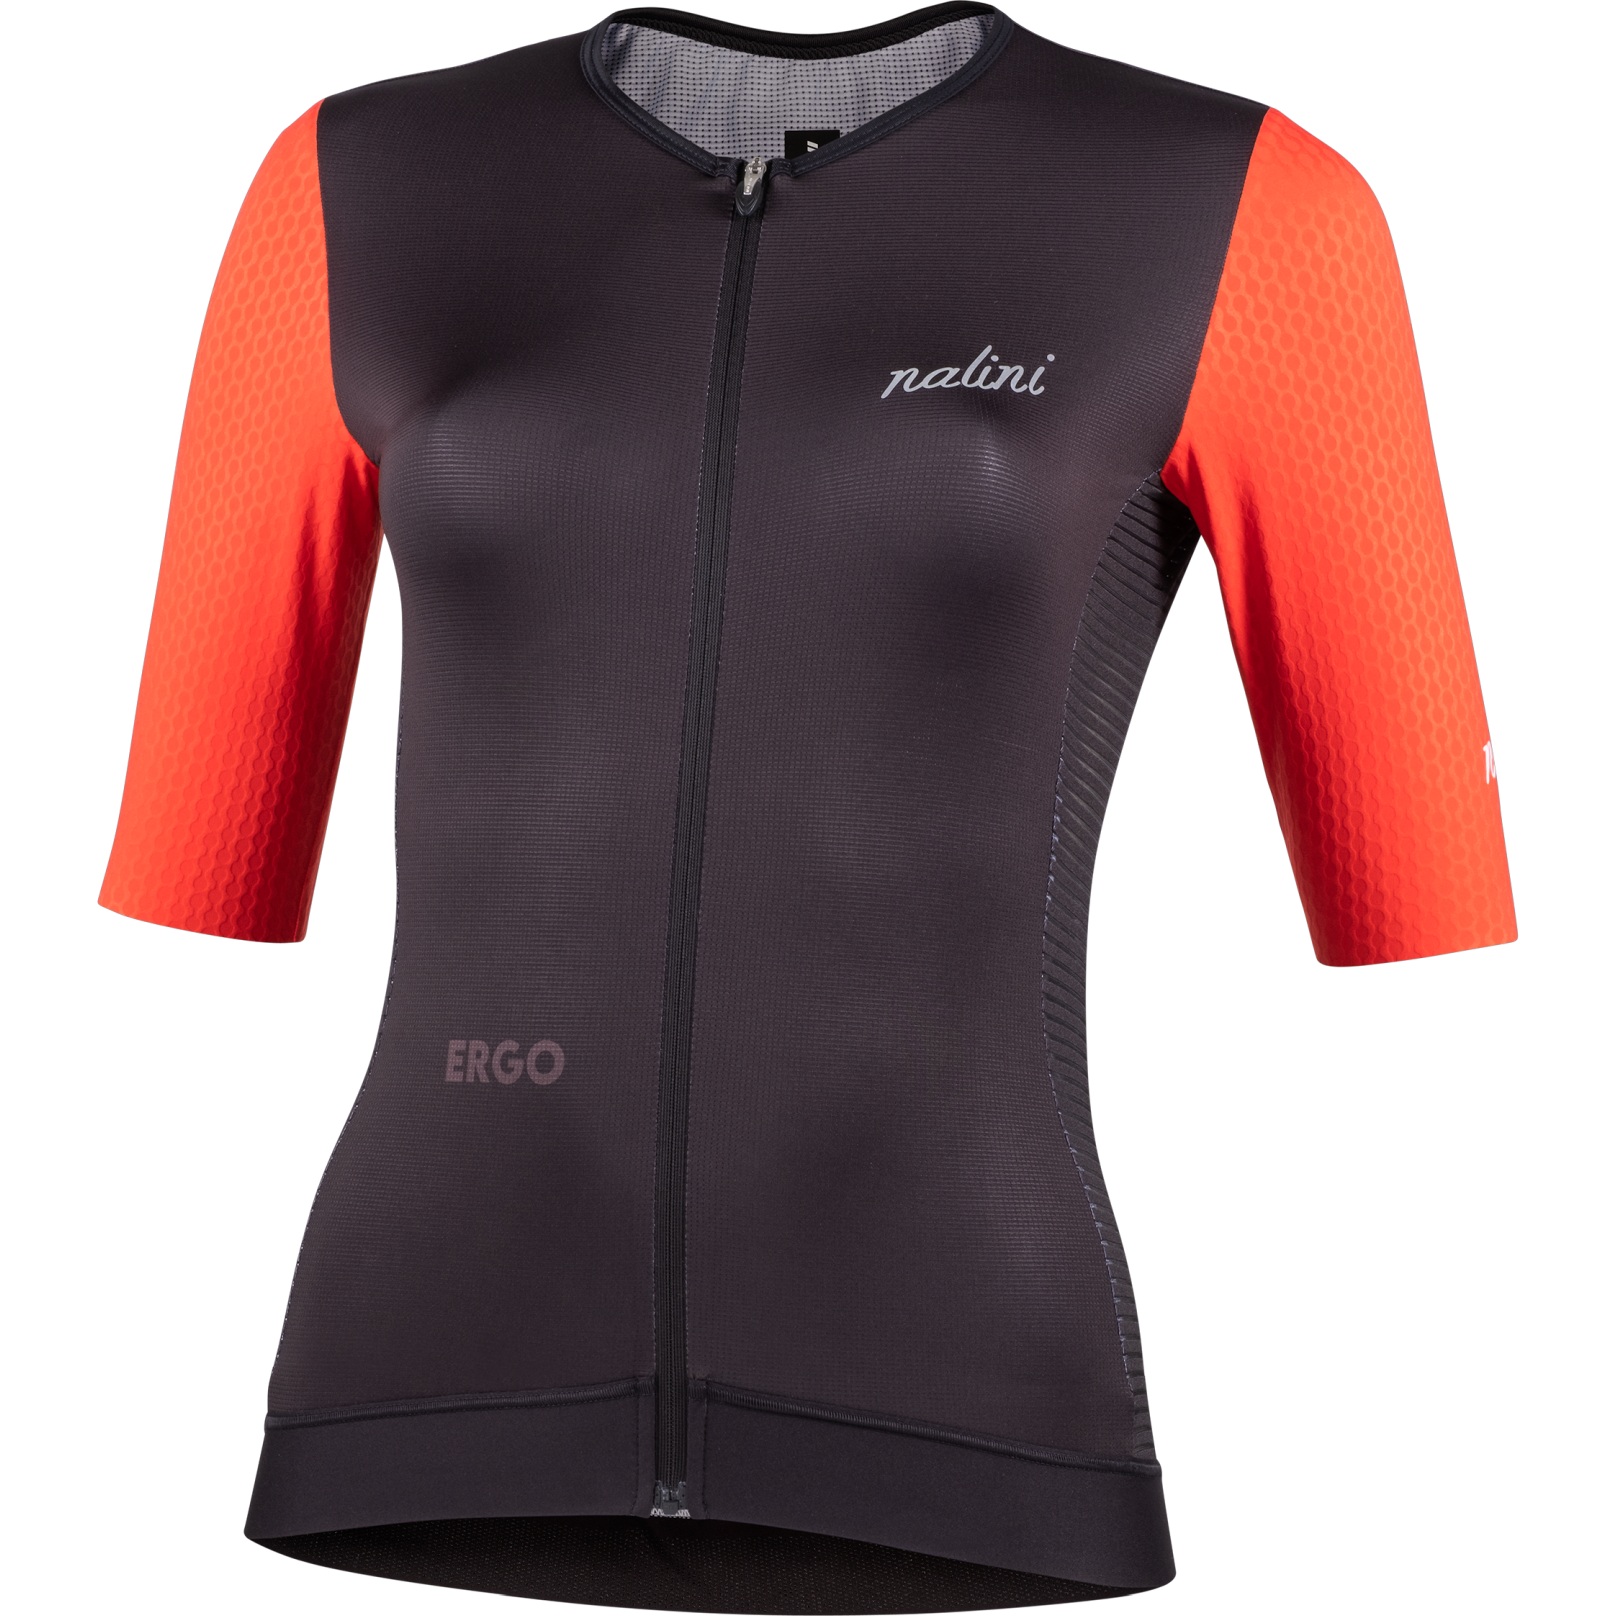 Productfoto van Nalini Laser Dames Fietsshirt met Korte Mouwen - zwart/coral 4000